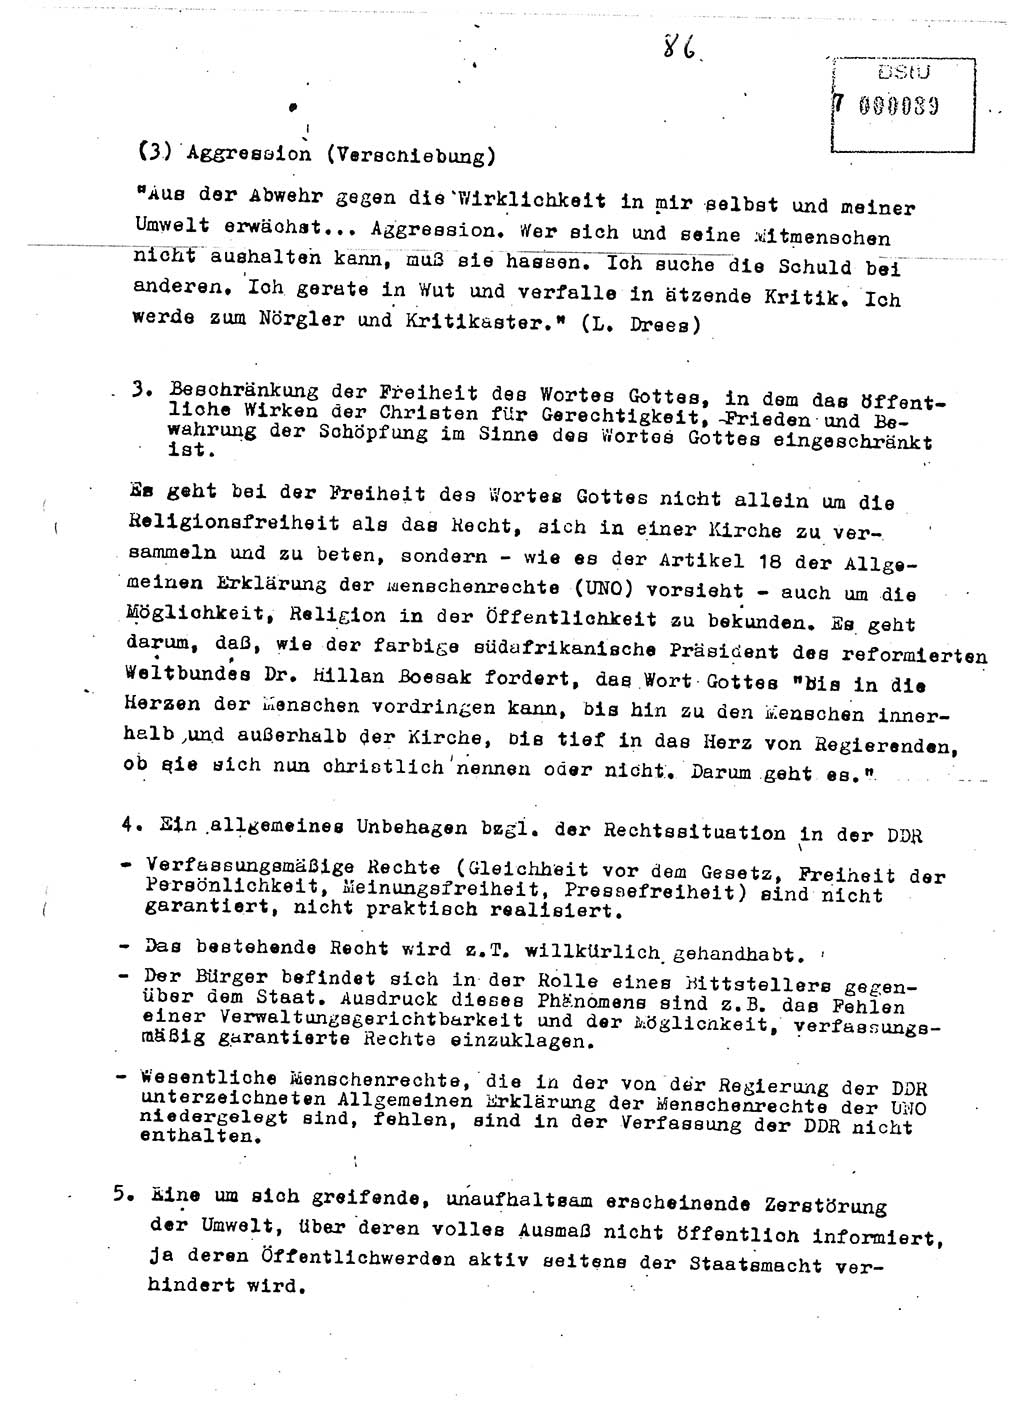 Diplomarbeit Major Günter Müller (HA Ⅸ/9), Ministerium für Staatssicherheit (MfS) [Deutsche Demokratische Republik (DDR)], Juristische Hochschule (JHS), Vertrauliche Verschlußsache (VVS) o001-402/89, Potsdam 1989, Seite 86 (Dipl.-Arb. MfS DDR JHS VVS o001-402/89 1989, S. 86)